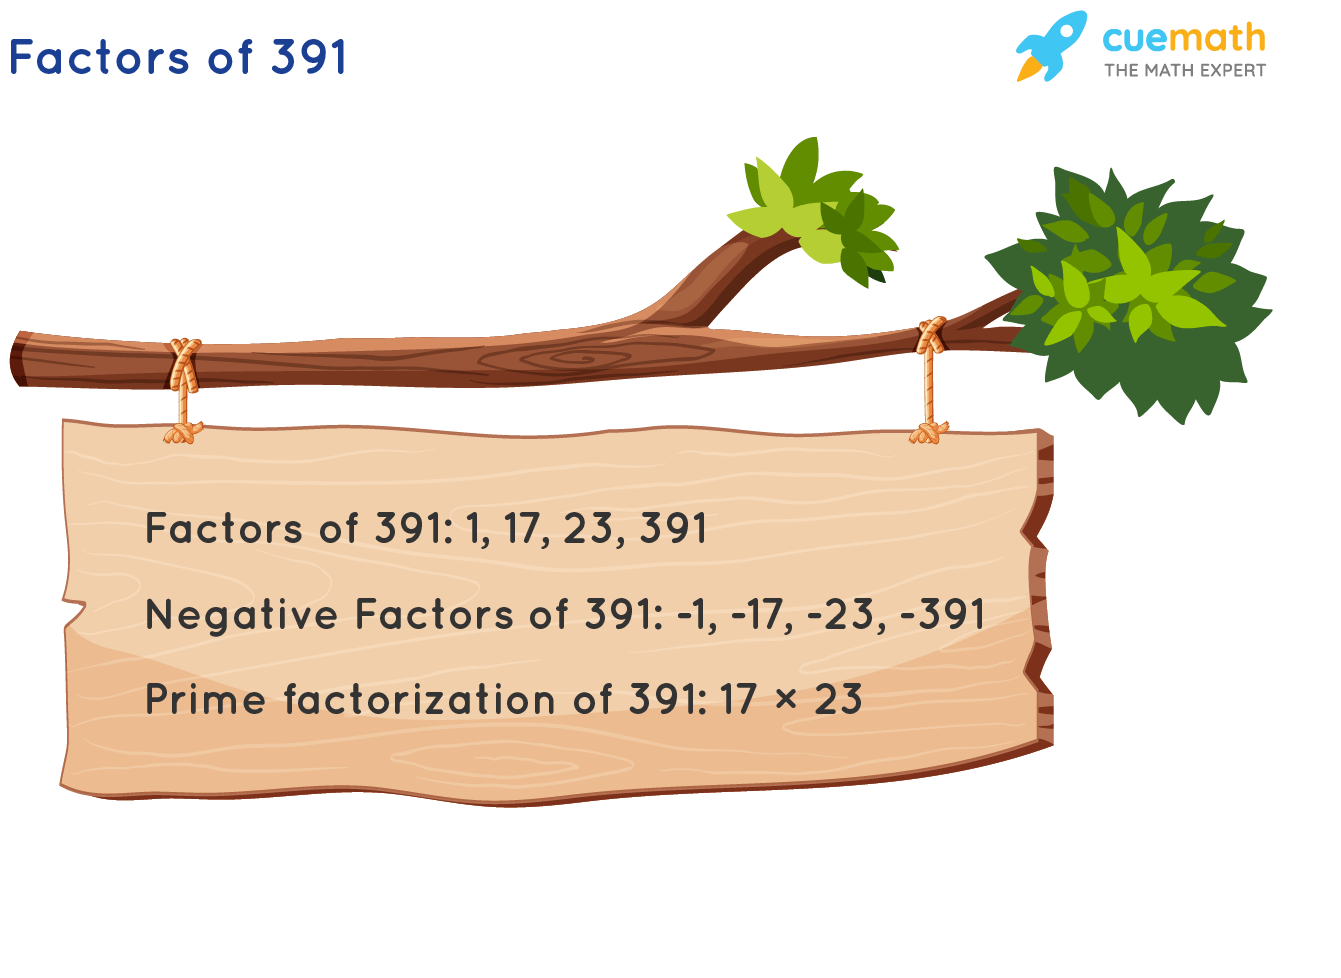 Factors of 391